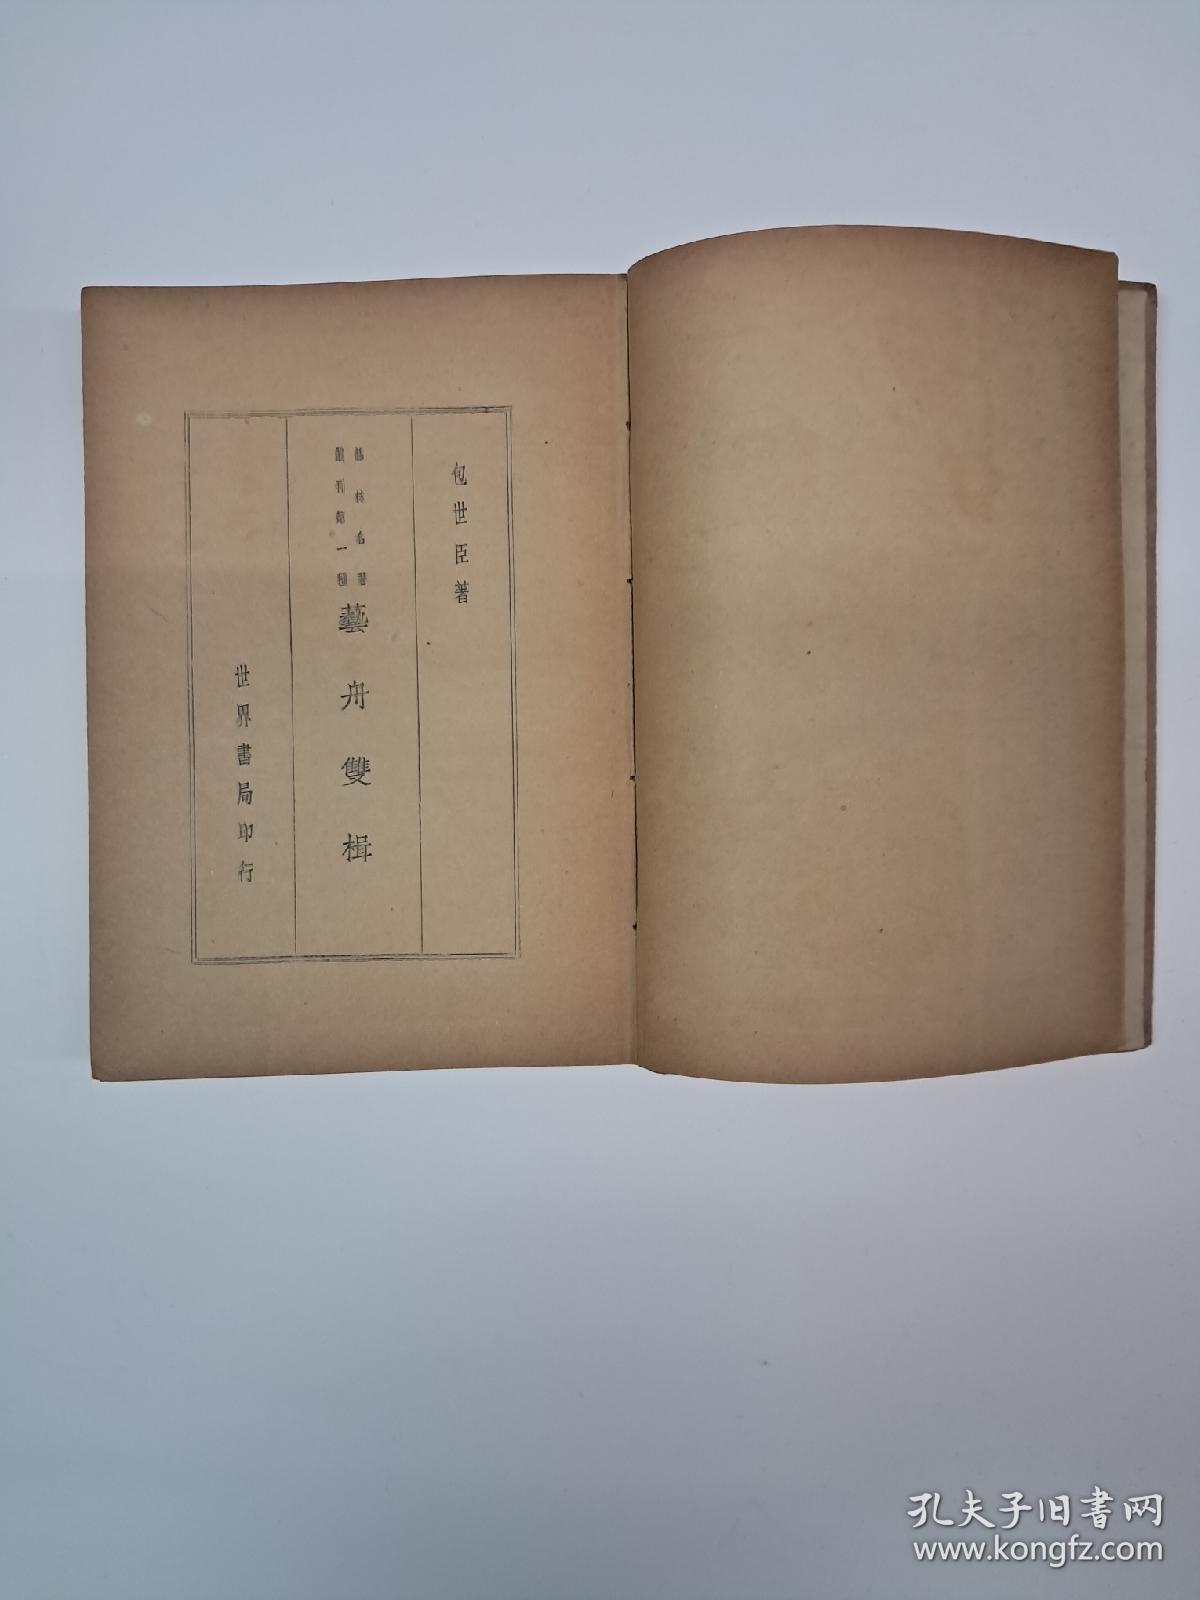 民国原版《艺林名著丛刊》朱剑芒编纂 1936年1月出版